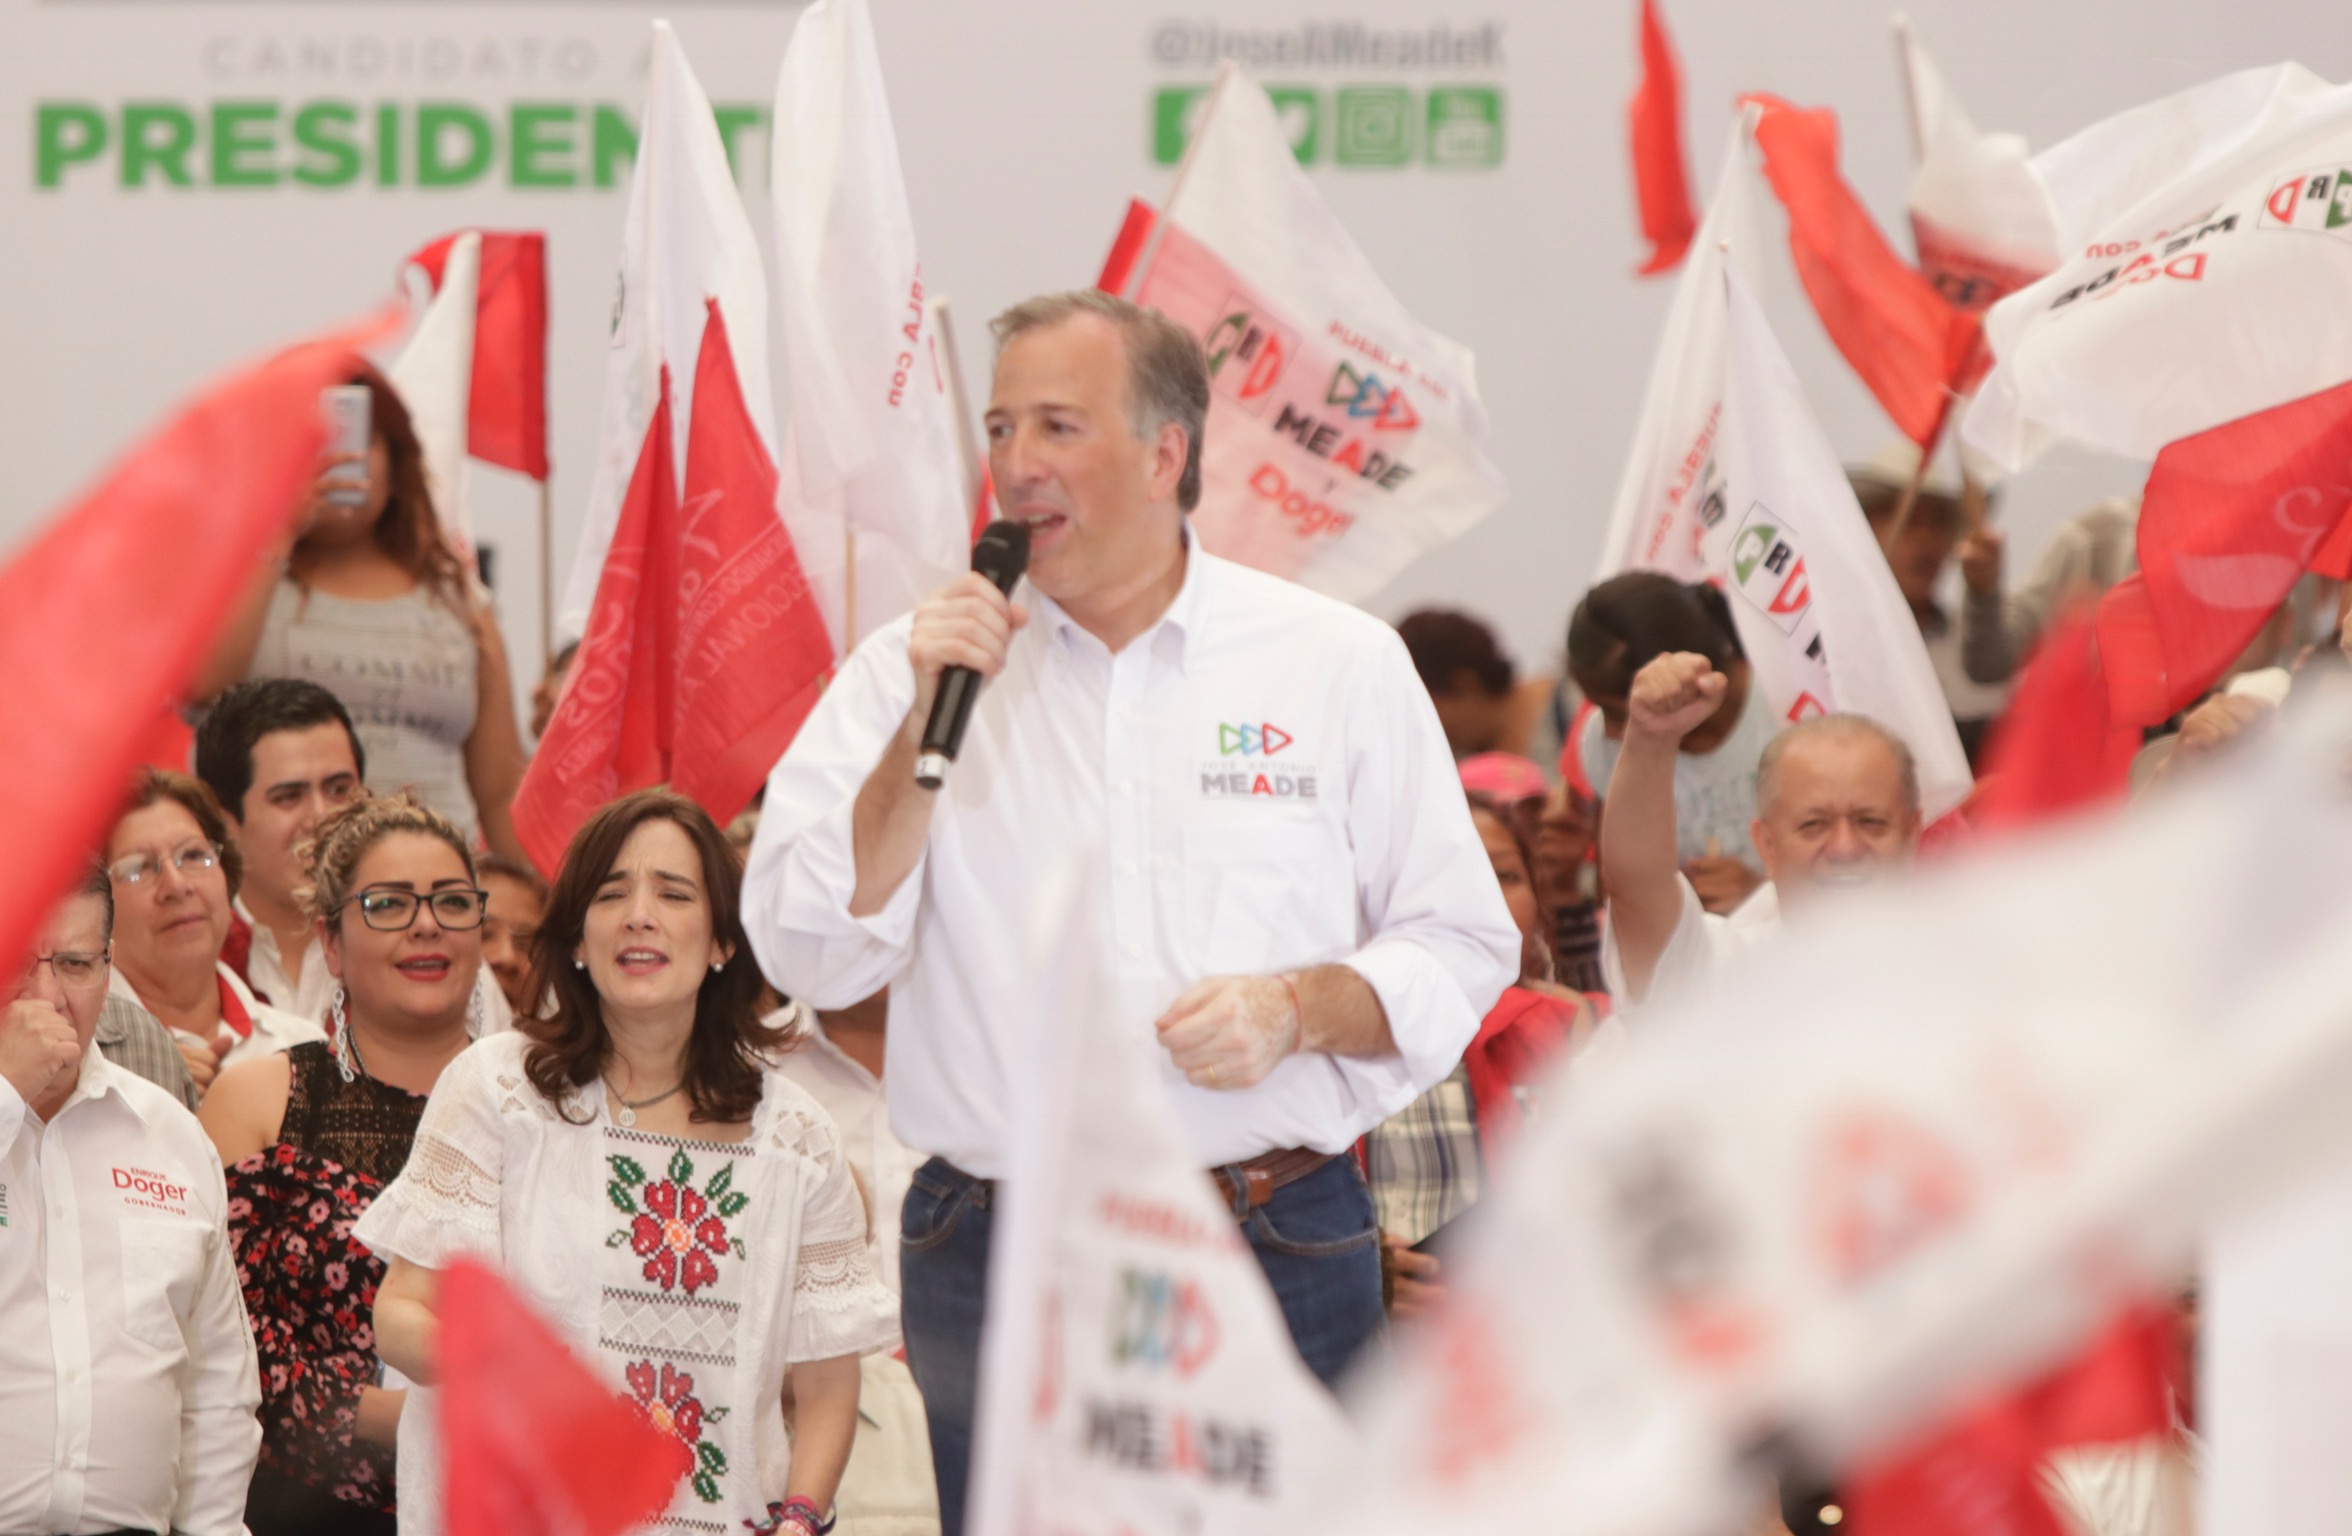 Evitar reelección disfrazada en Puebla, pide Meade en Atlixco